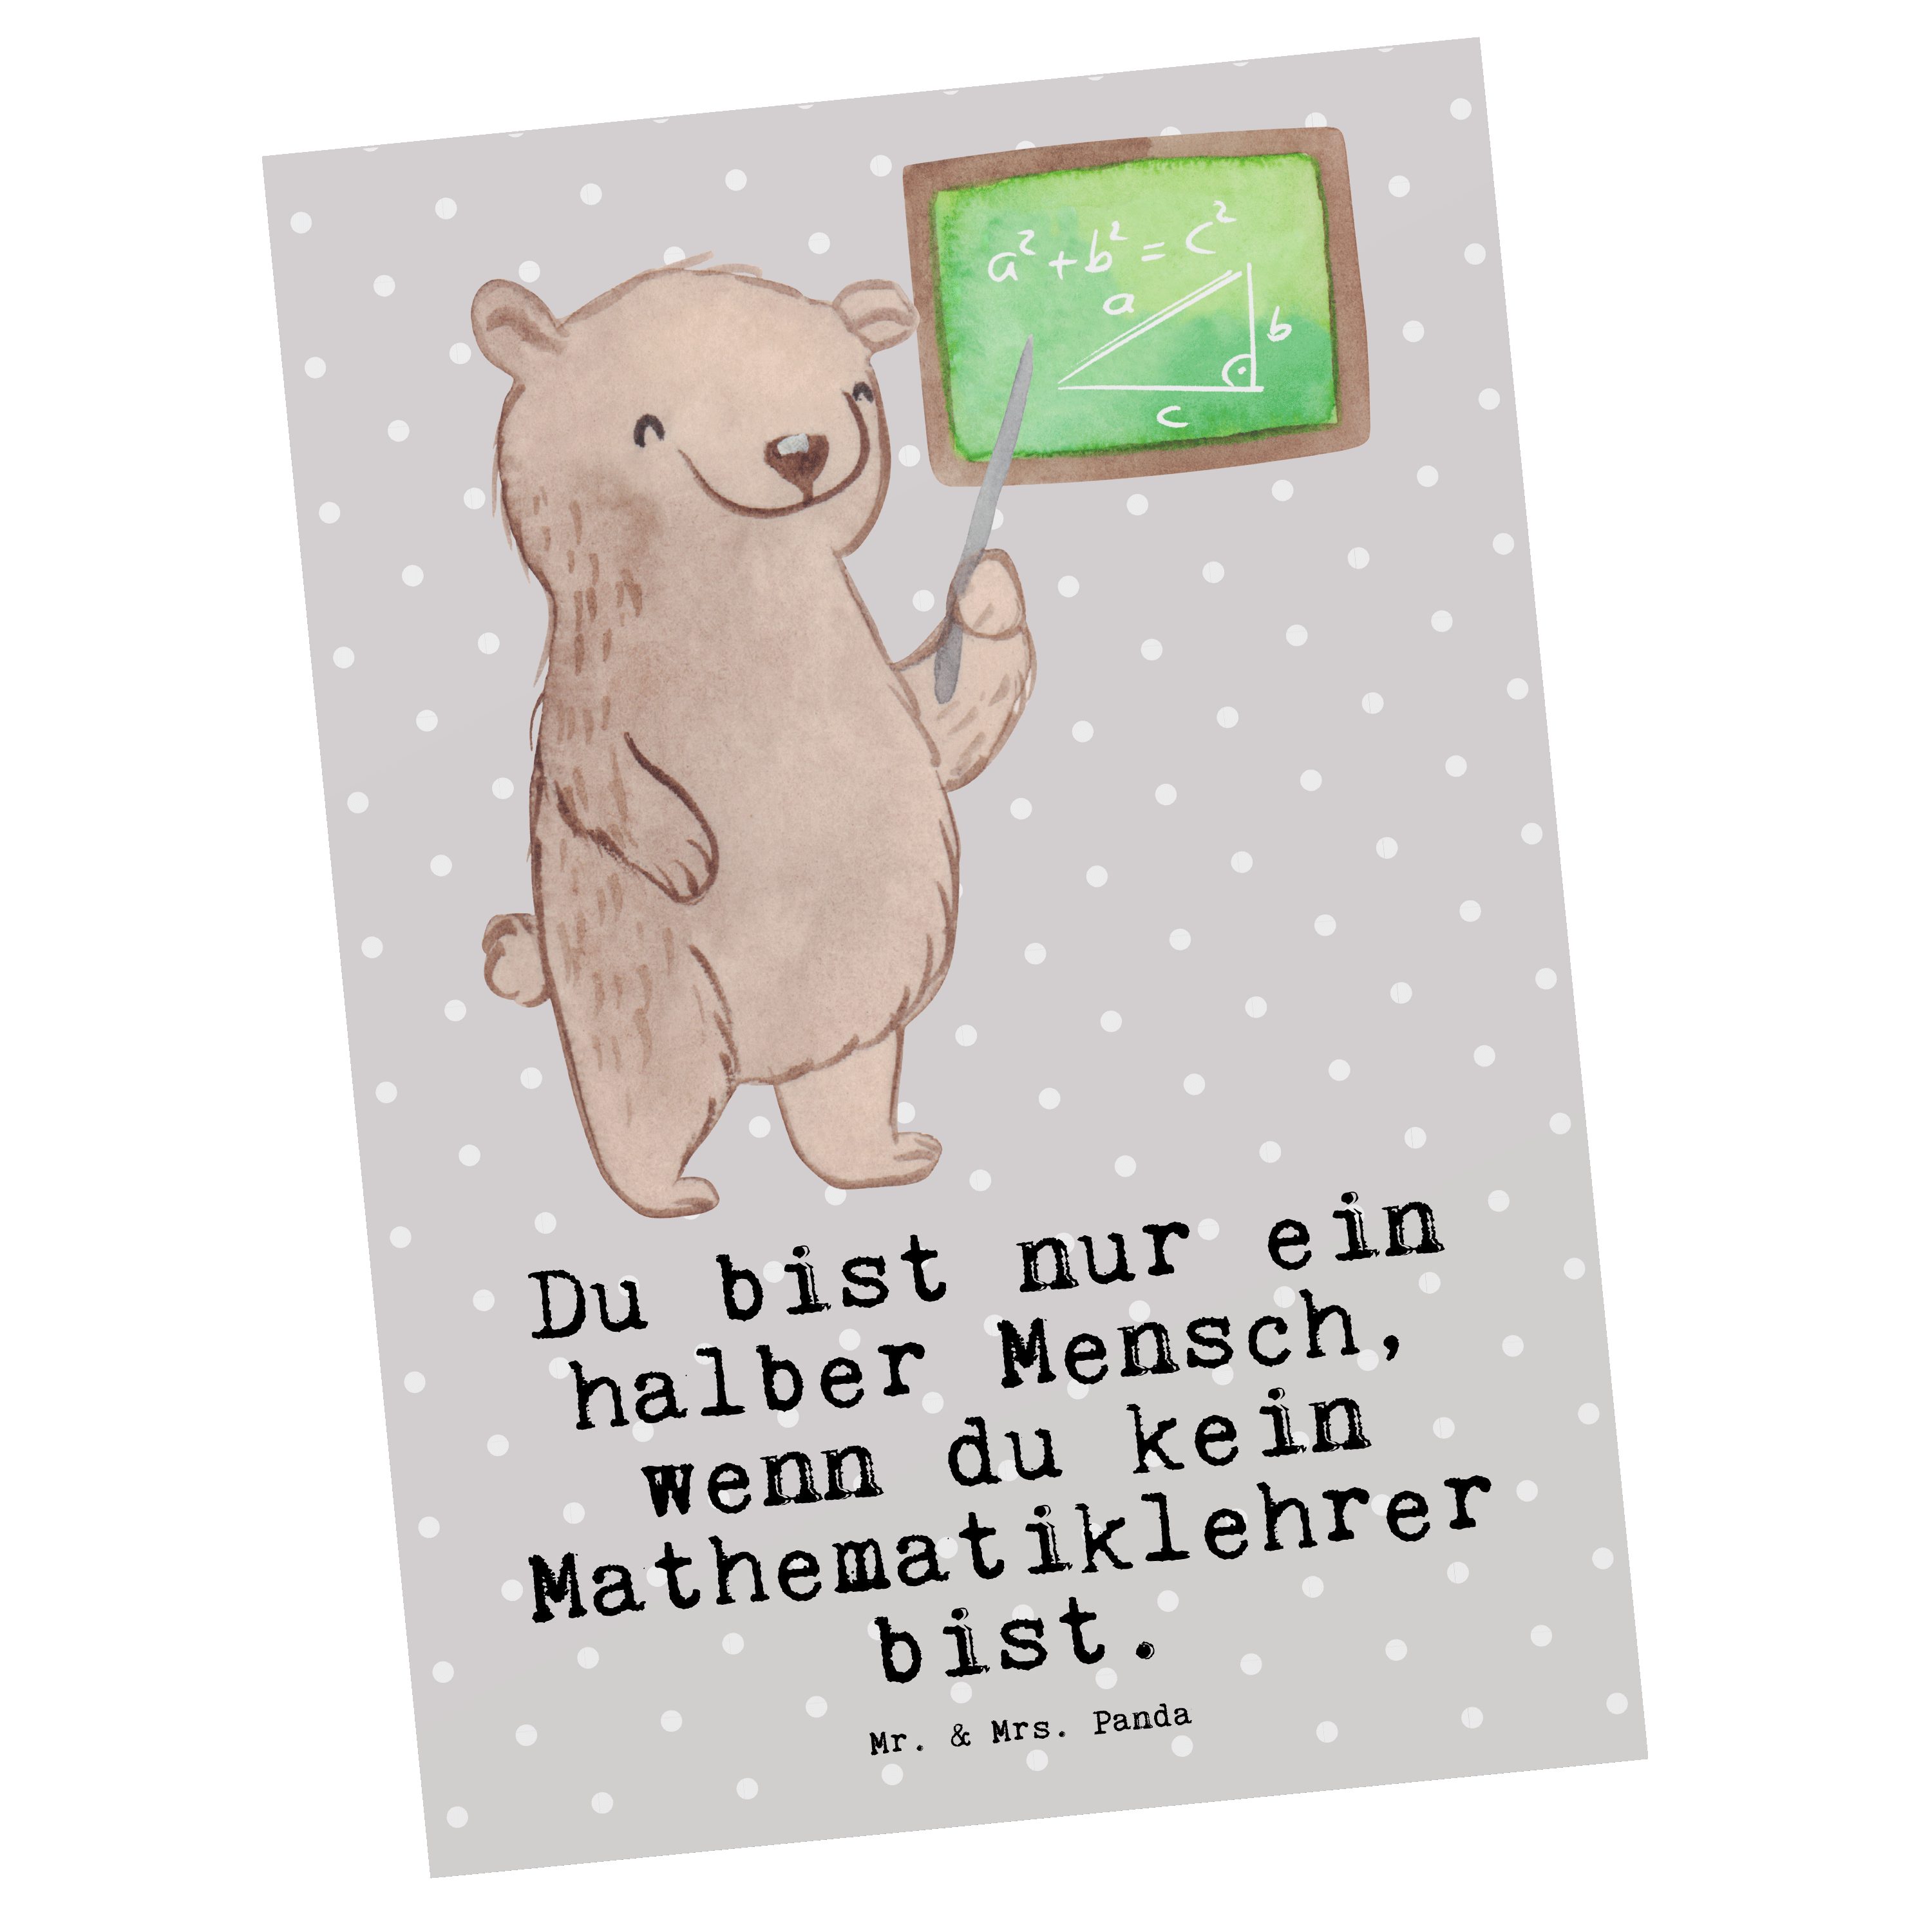 Mr. & Mrs. Panda Geb - mit - Herz Geschenk, Mathelehrer, Pastell Mathematiklehrer Grau Postkarte